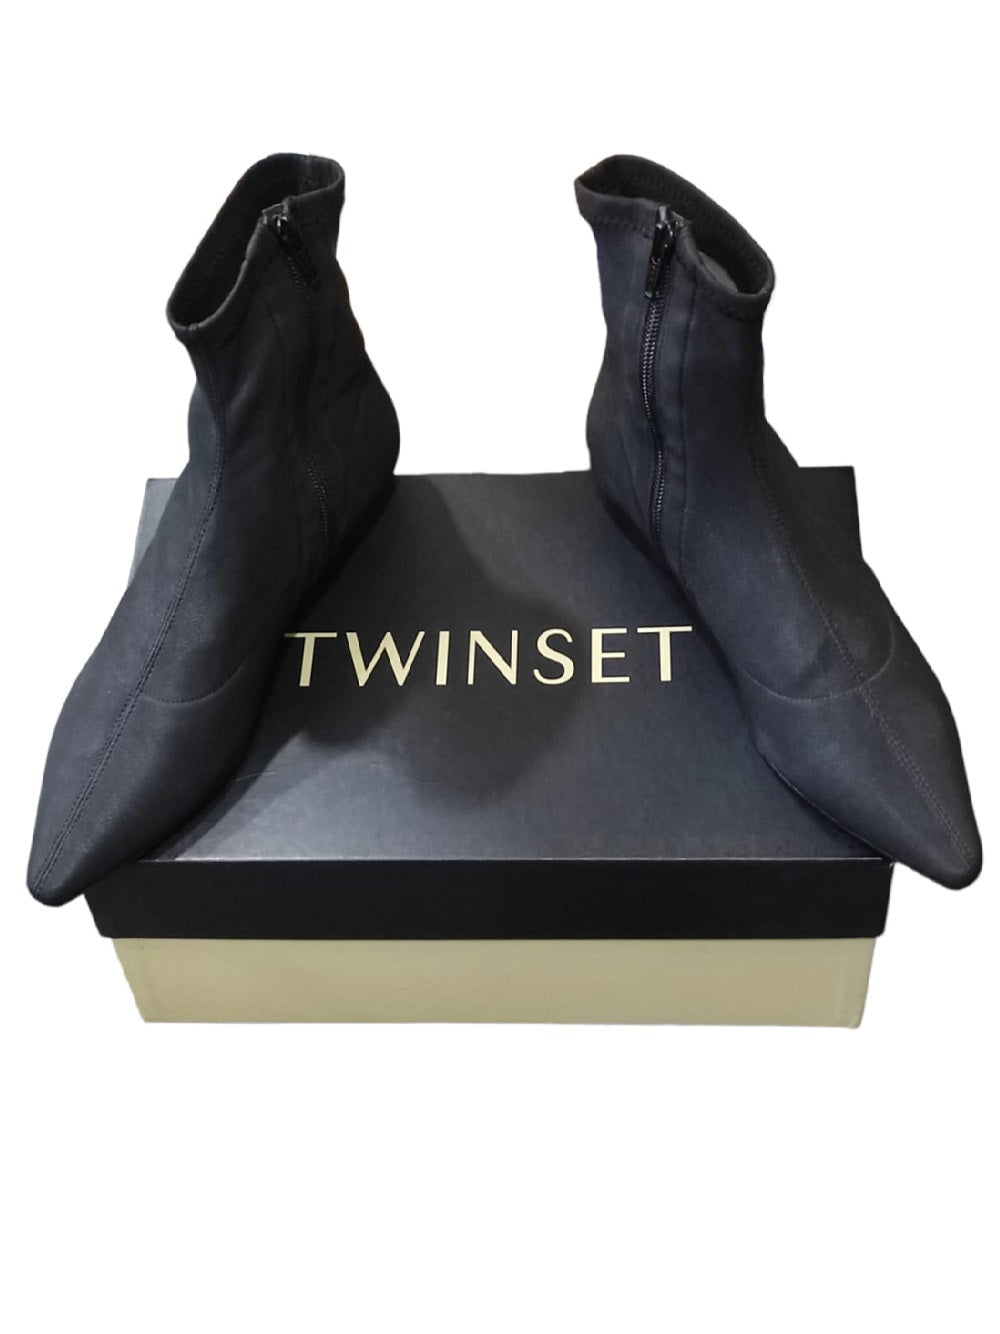 Tronchetto Twinset modello DA8PPA a punta con tacco basso realizzato in morbida nappa nera